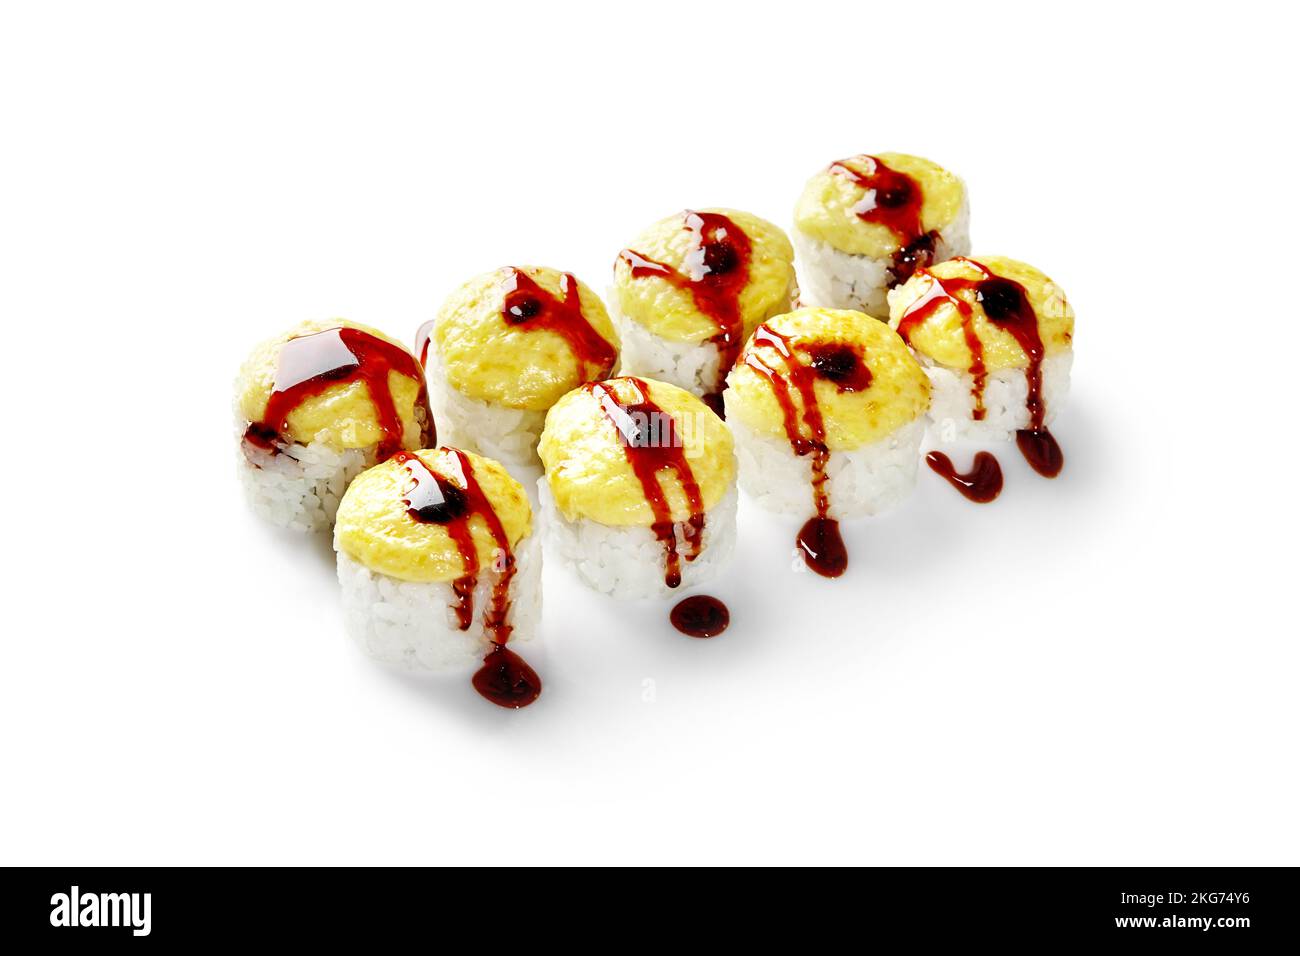 Zarte gebackene Uramaki-Brötchen gefüllt mit Frischkäse mit goldenem Hut aus geschmolzenem Käse, gekleidet mit herzhafter Unagi-Sauce auf weißem Hintergrund isoliert Stockfoto